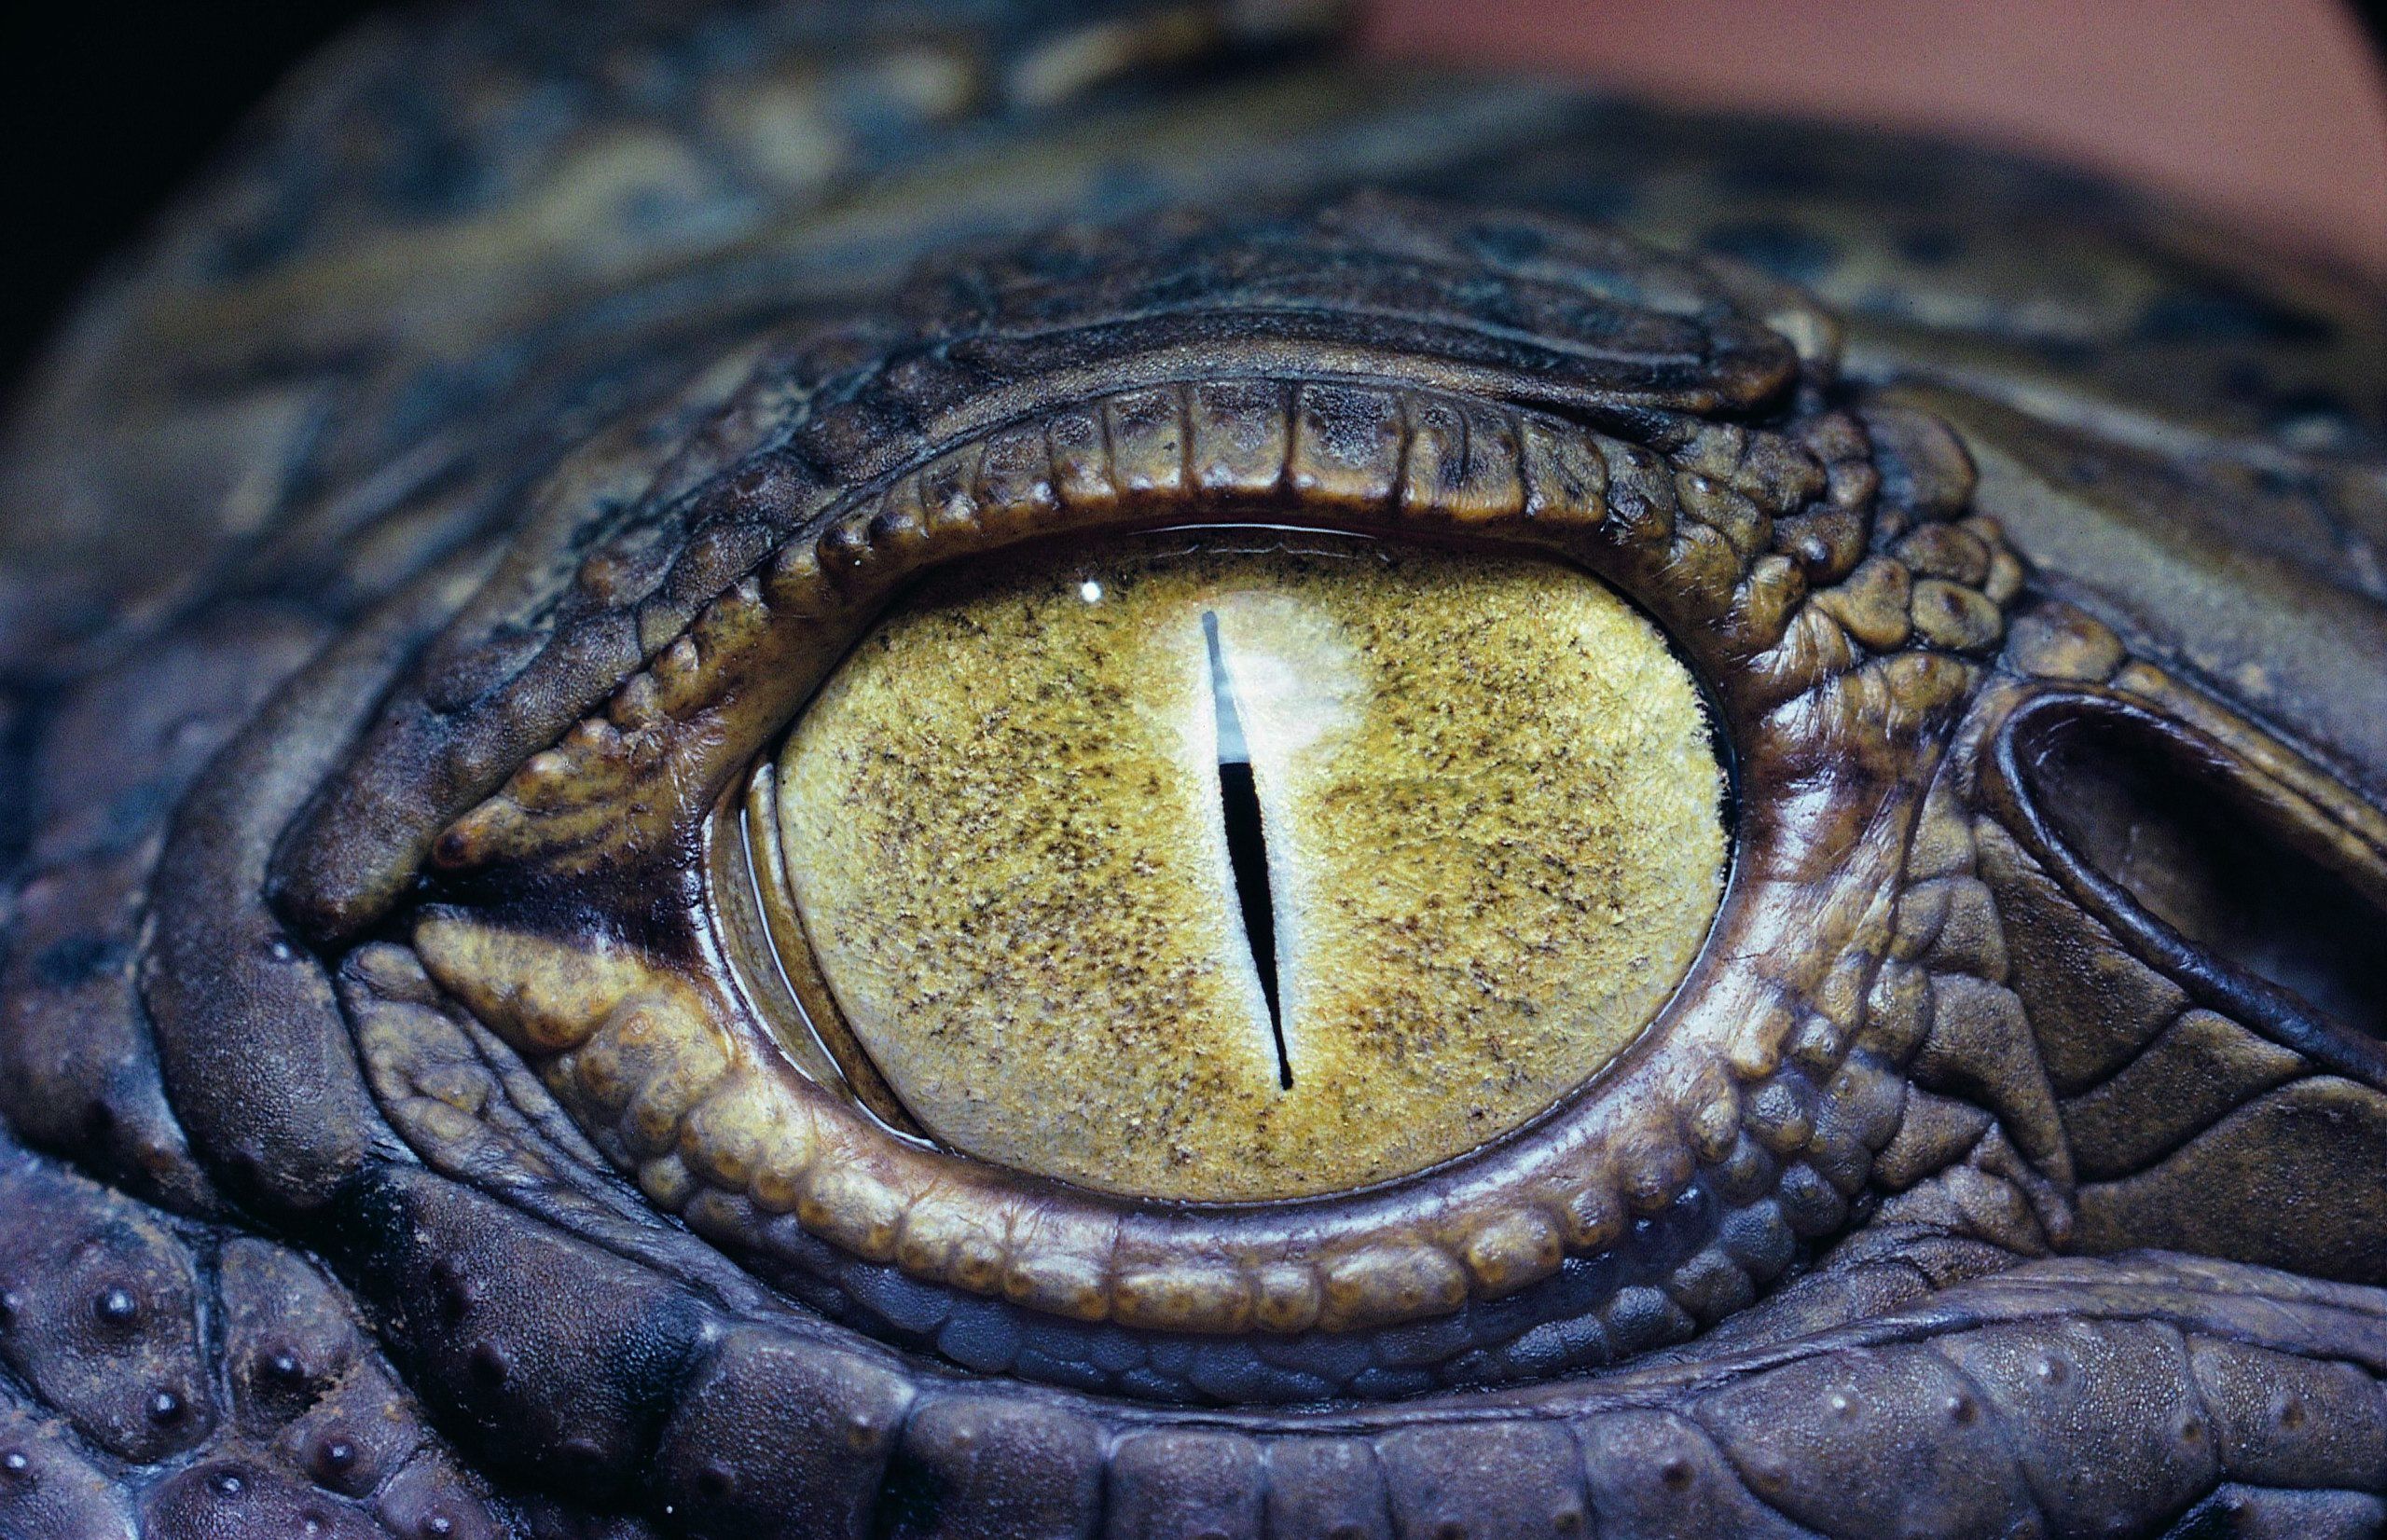 Eye of the crocodile